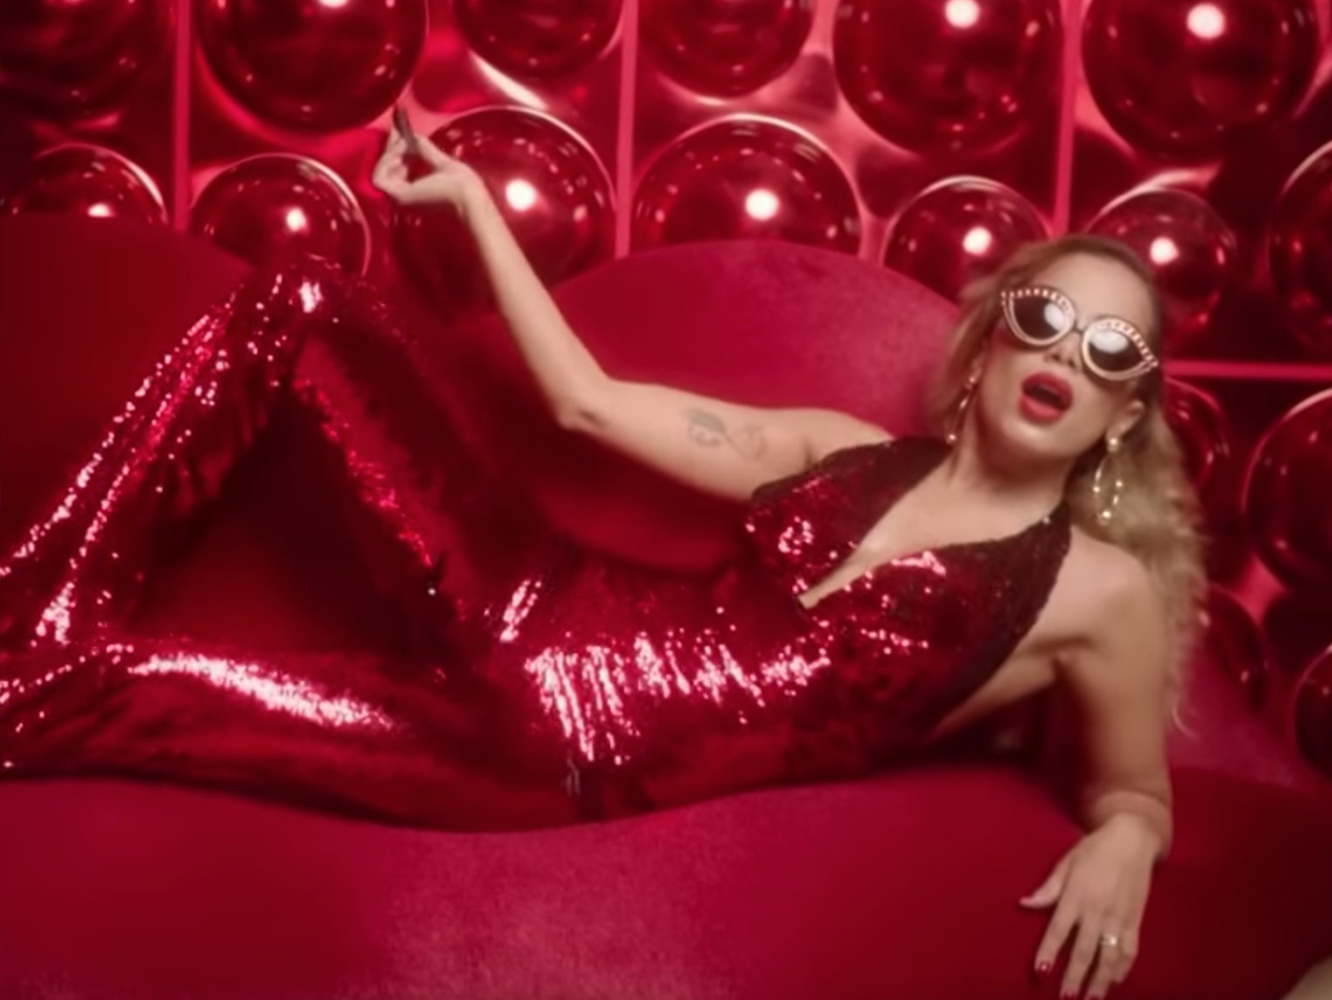  El nuevo single y vídeo de Anitta, ‘Indecente’, es… erm, bastante indecente